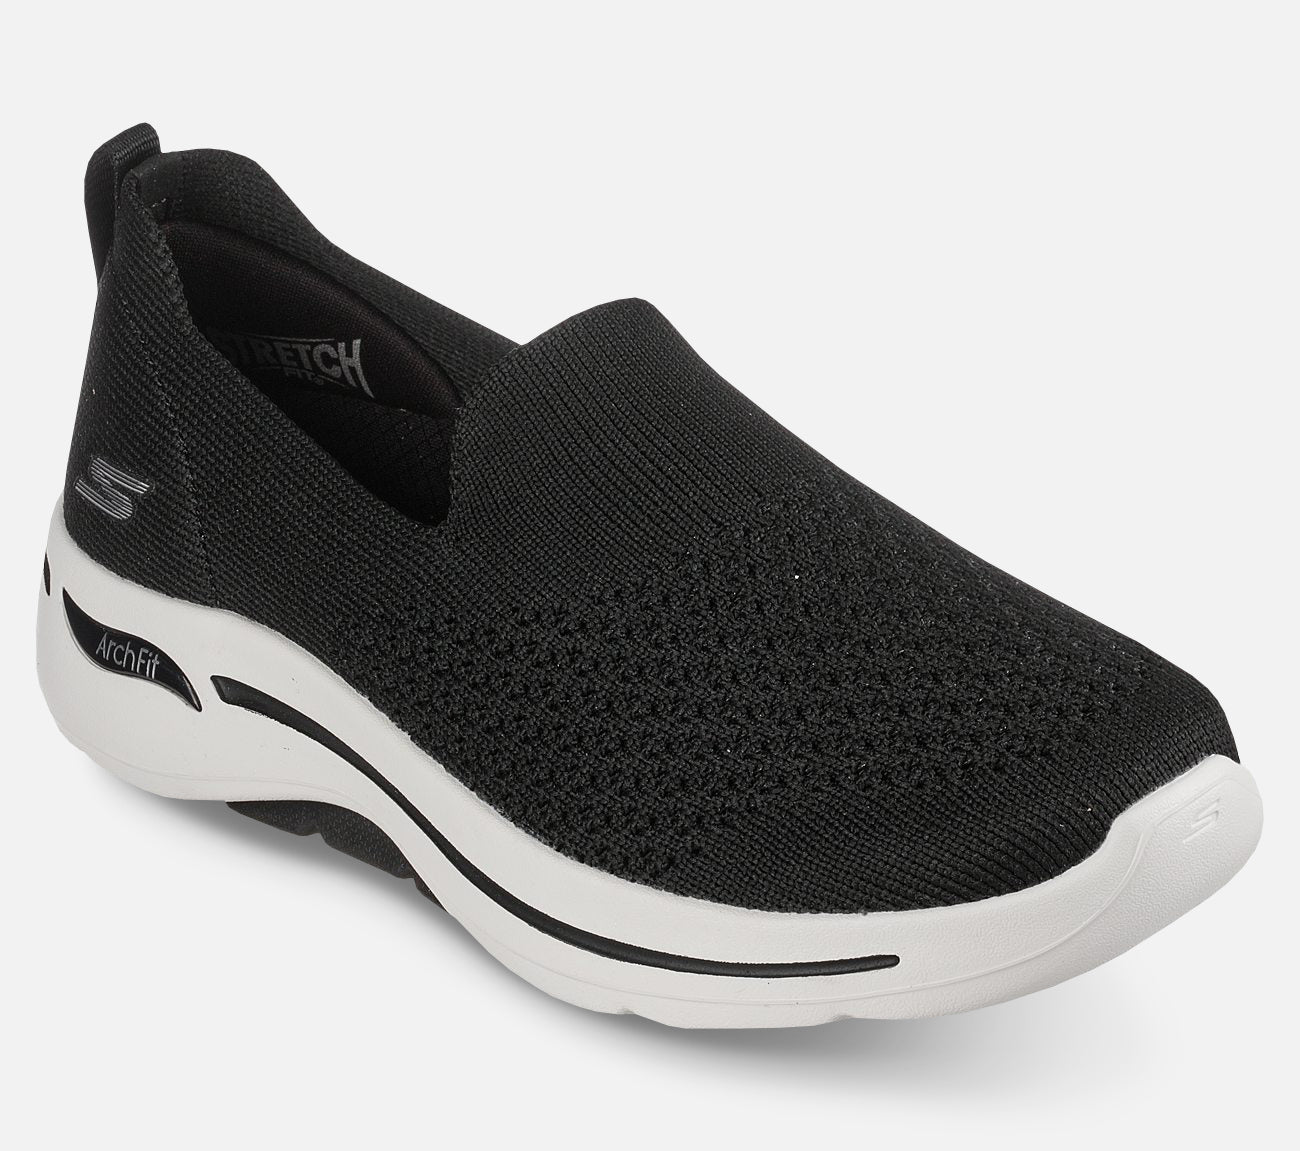 GO WALK Arch Fit - Delora Shoe Skechers